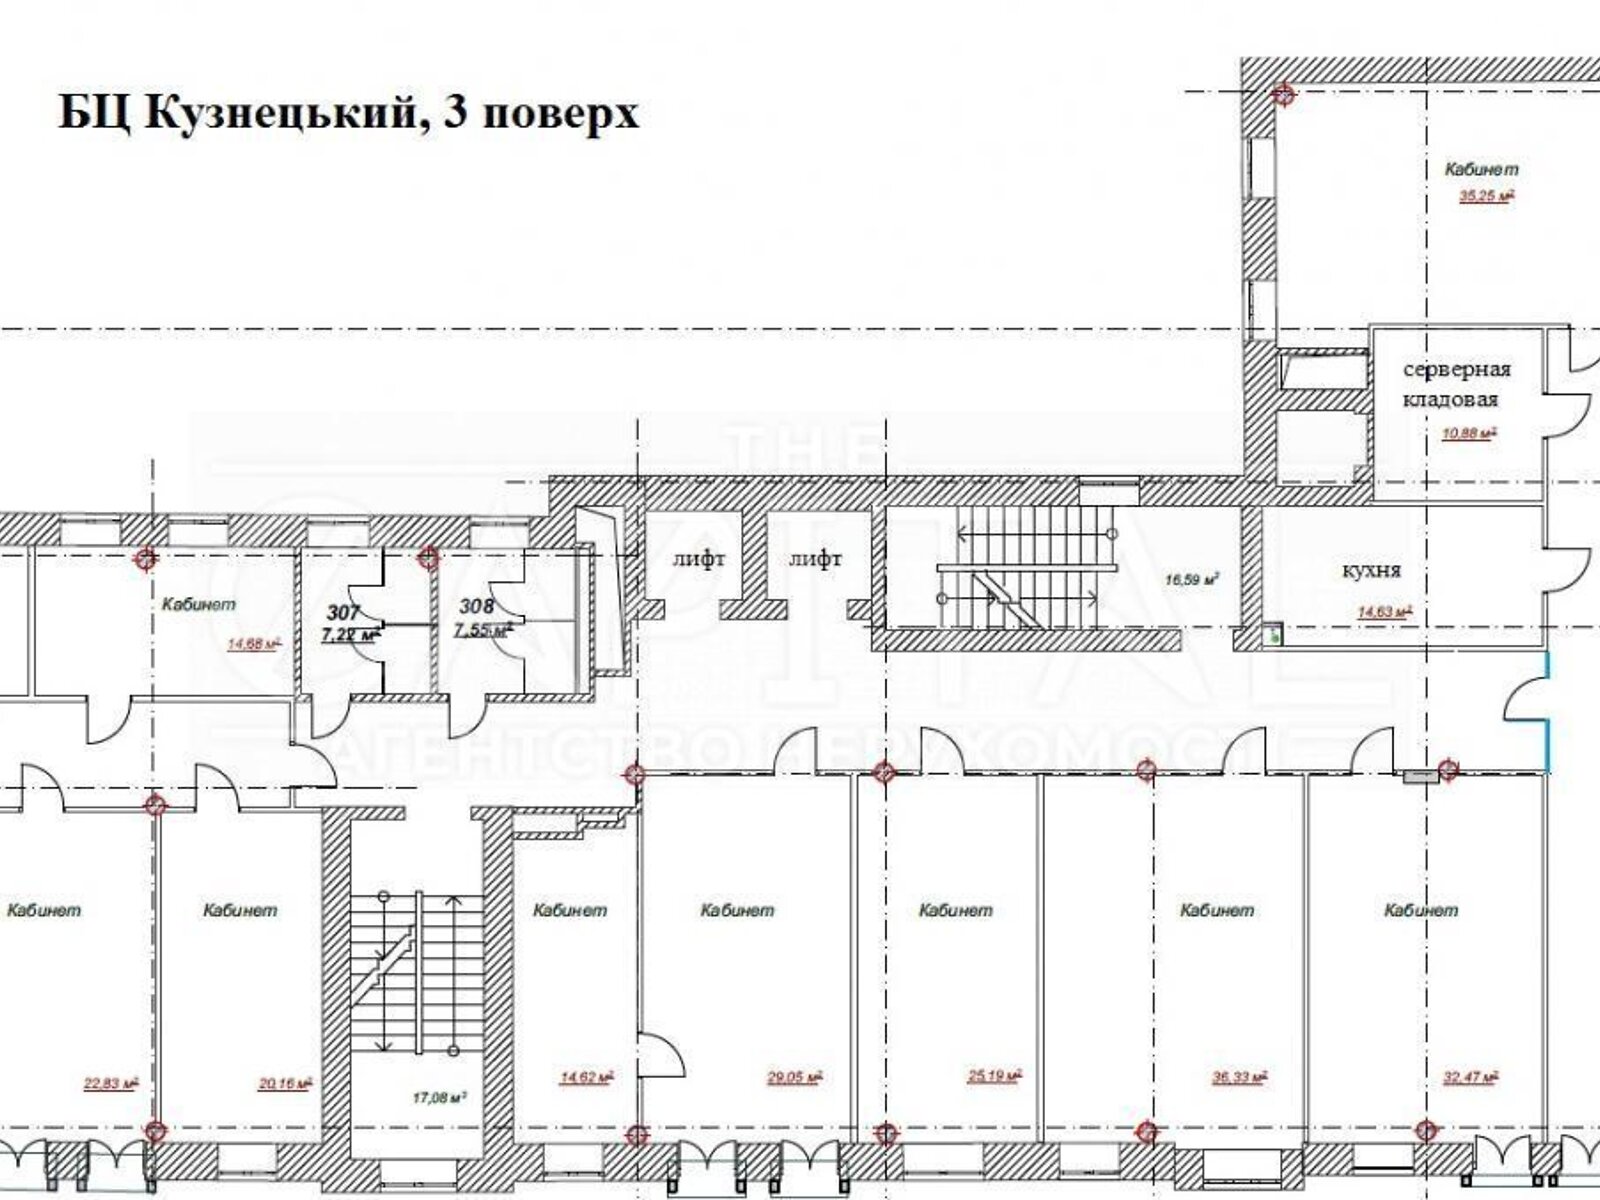 Аренда офисного помещения в Киеве, Моторный переулок 5, помещений - 16, этаж - 3 фото 1